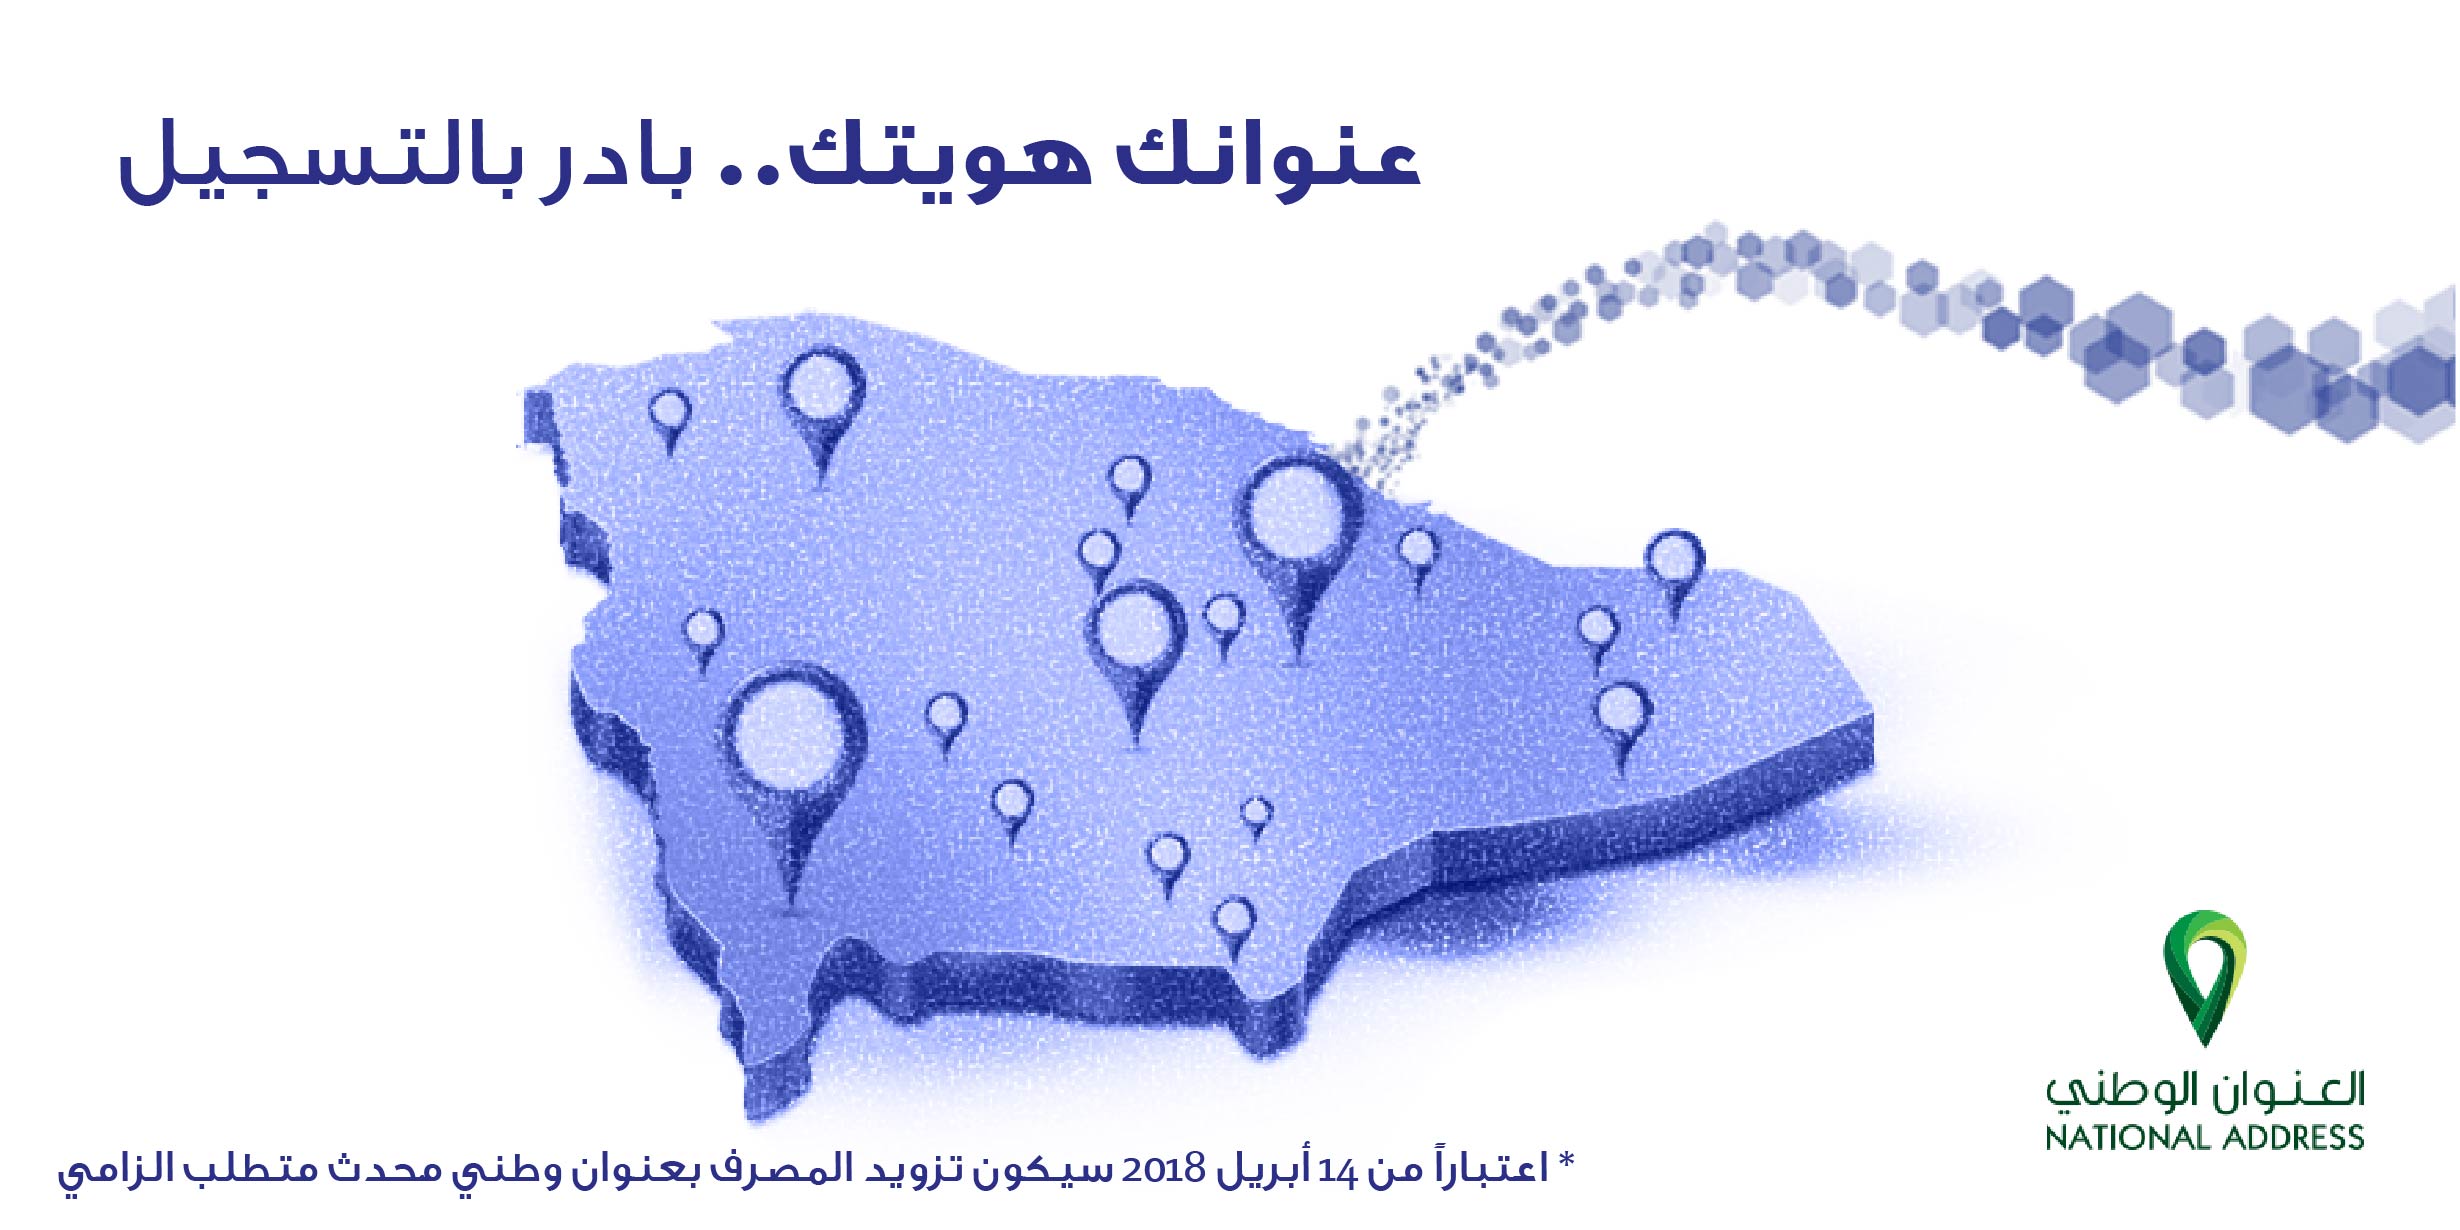 تسجيل العنوان الوطني بالبريد السعودي